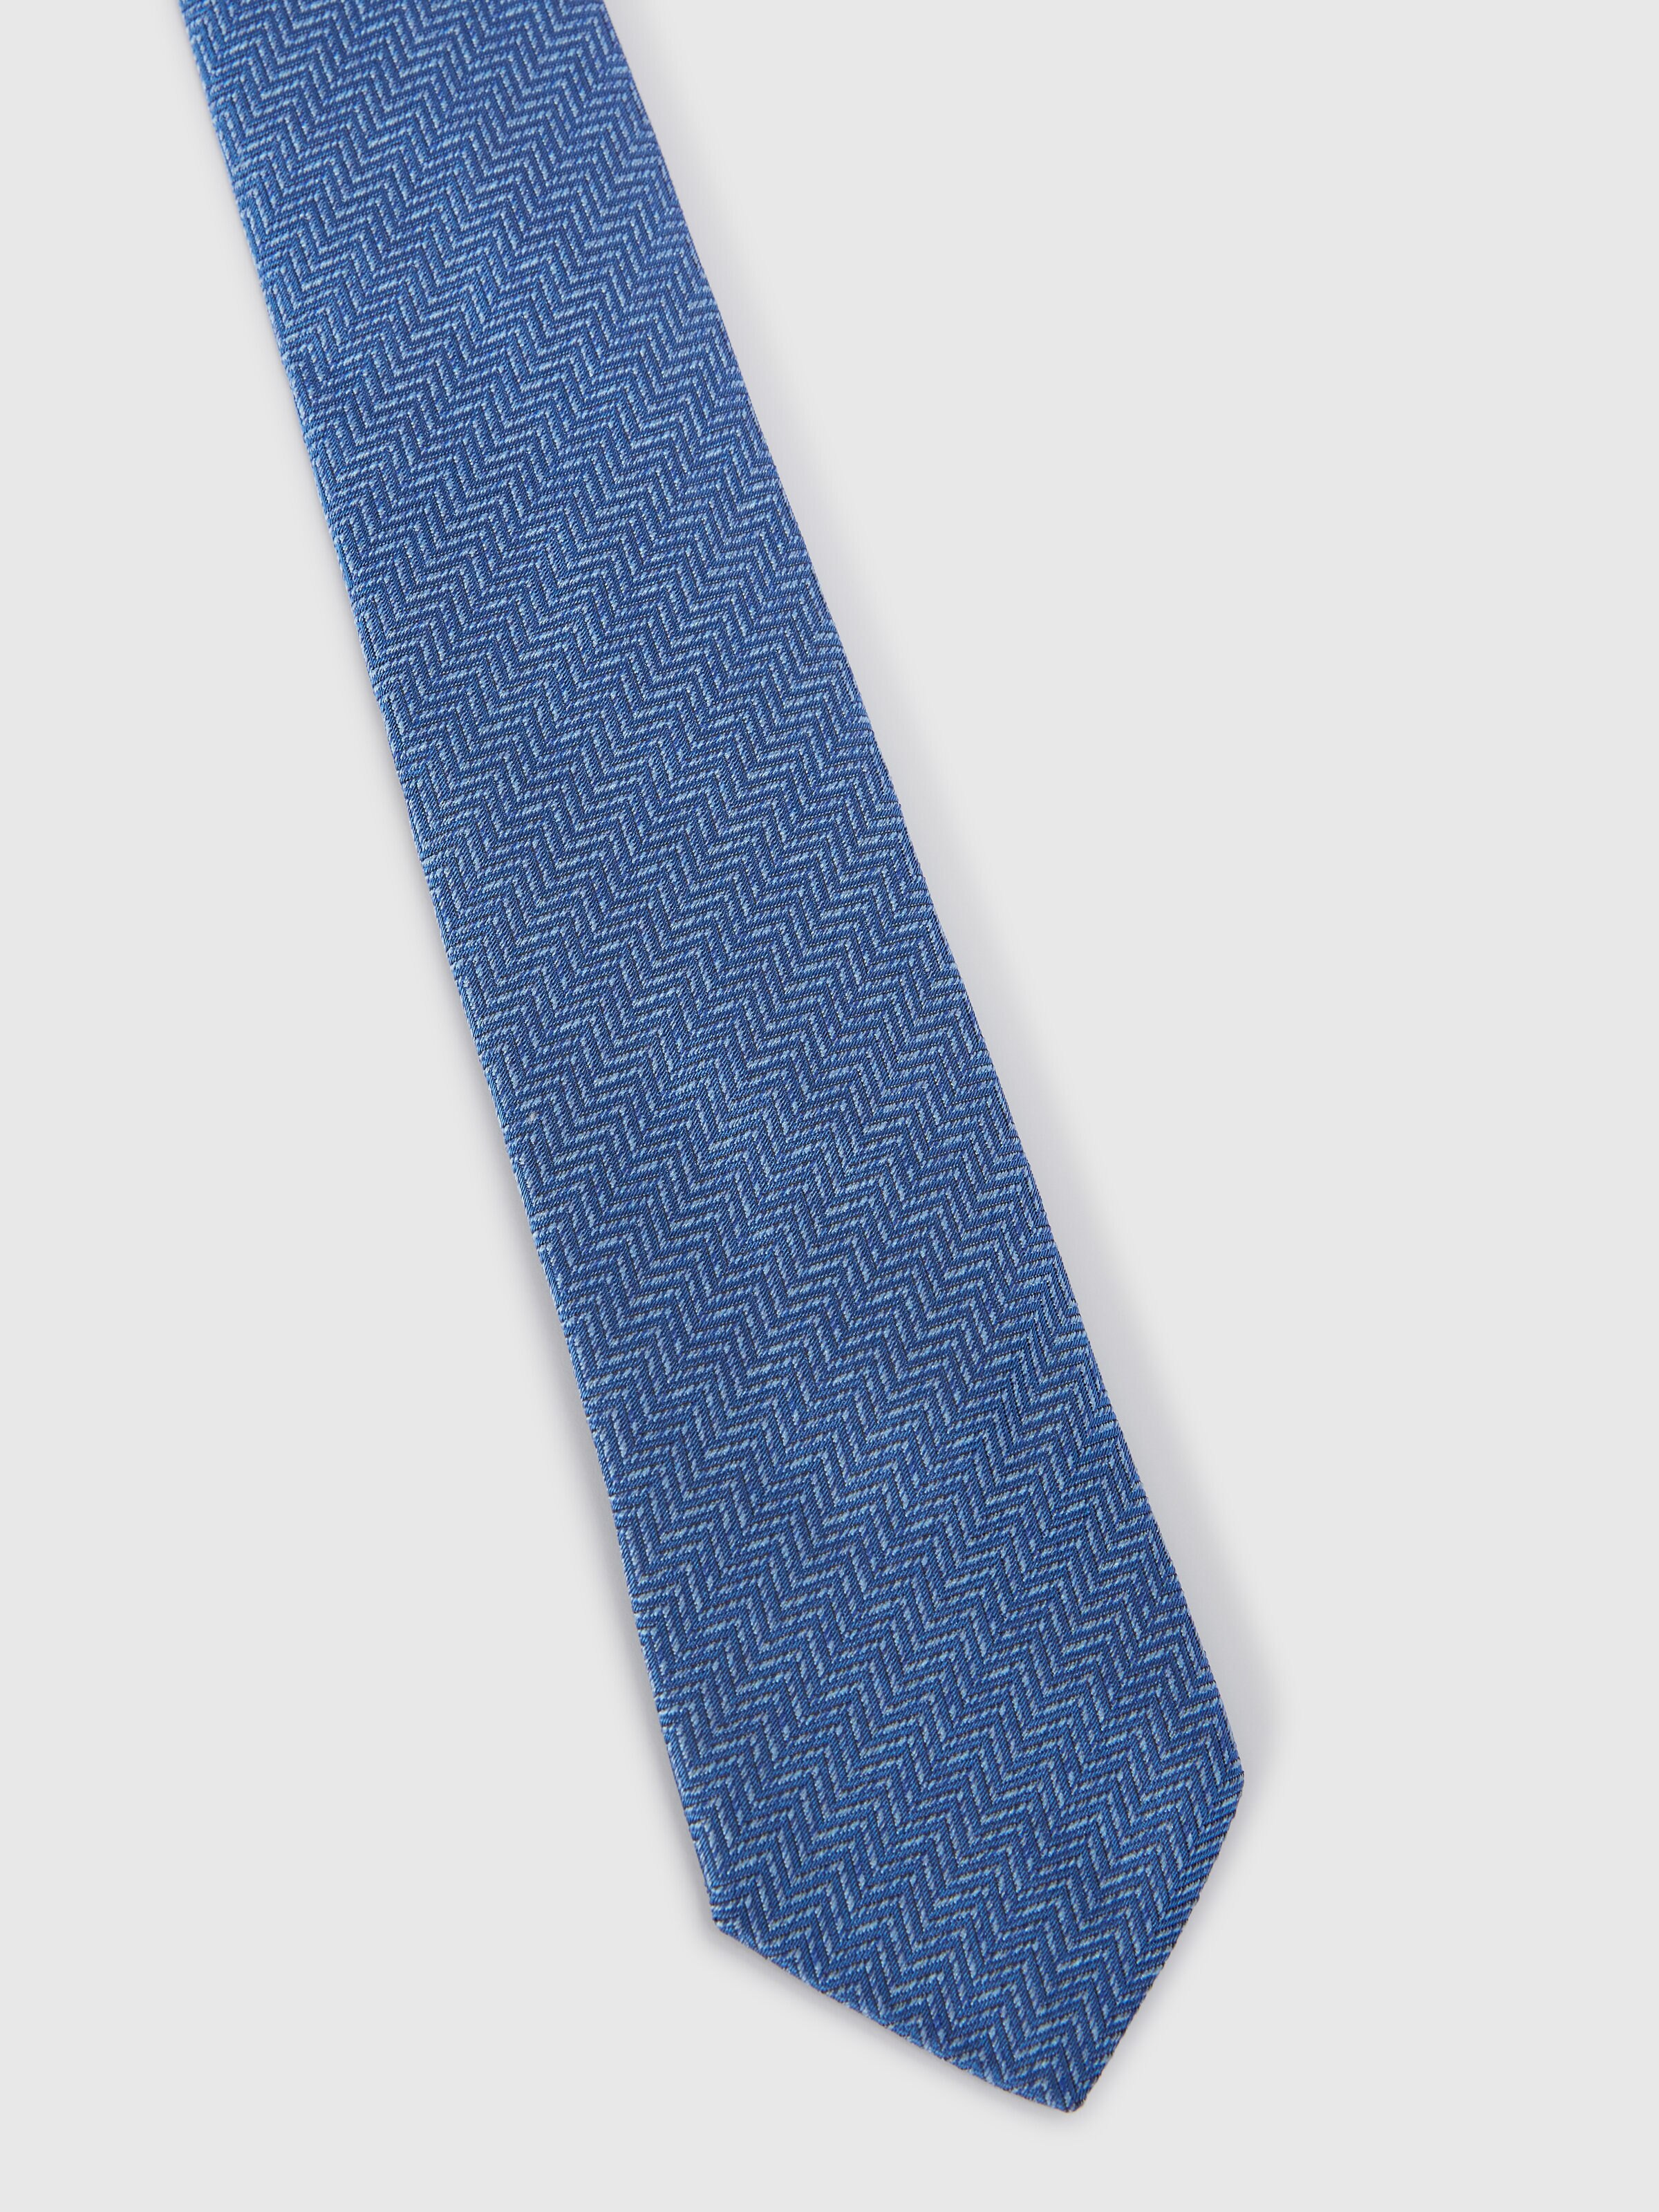 Silk chevron tie, Multicoloured  - 1